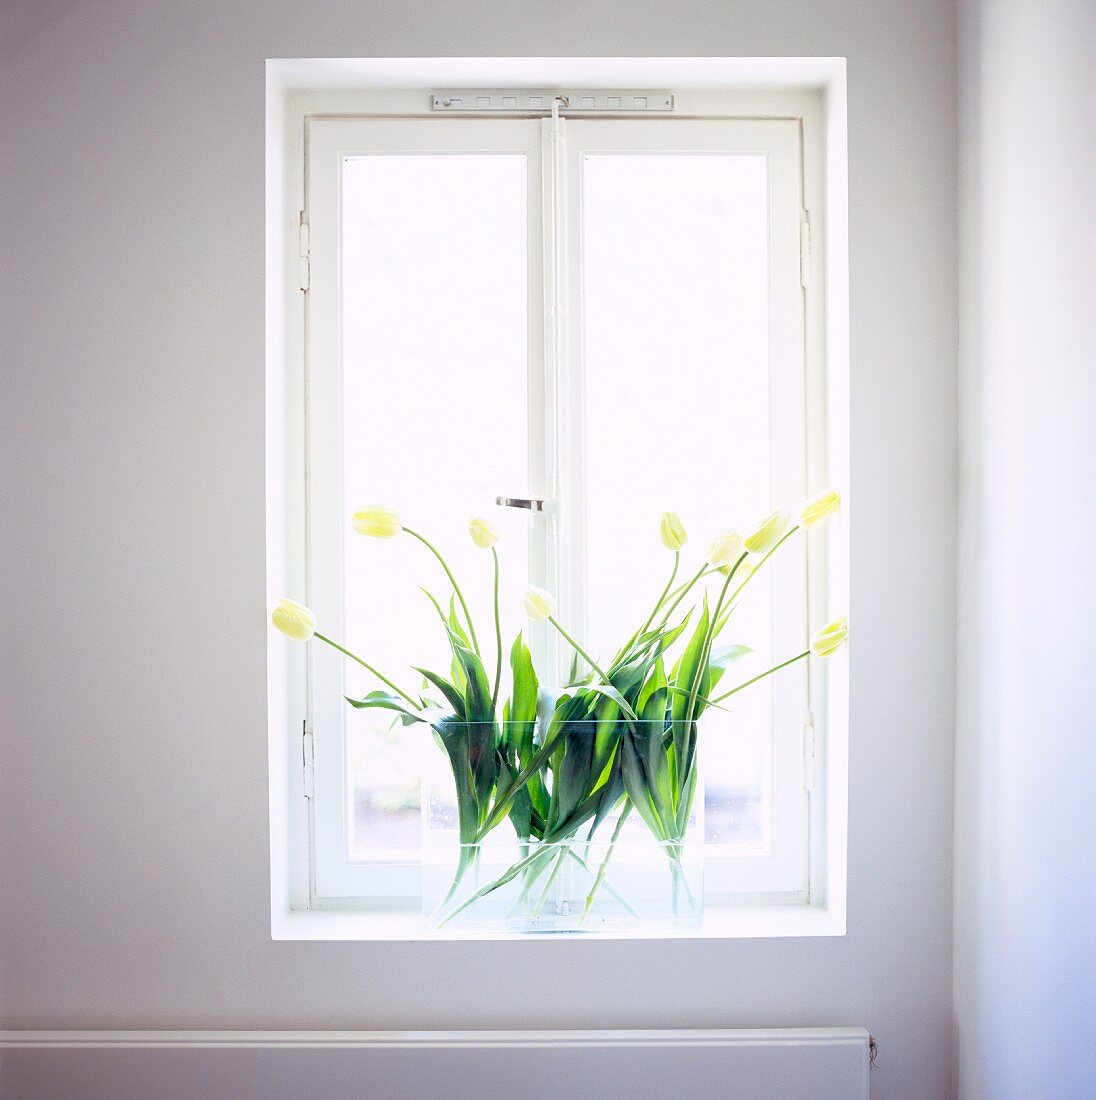 Fensternische mit gelben Tulpen in Glasvase